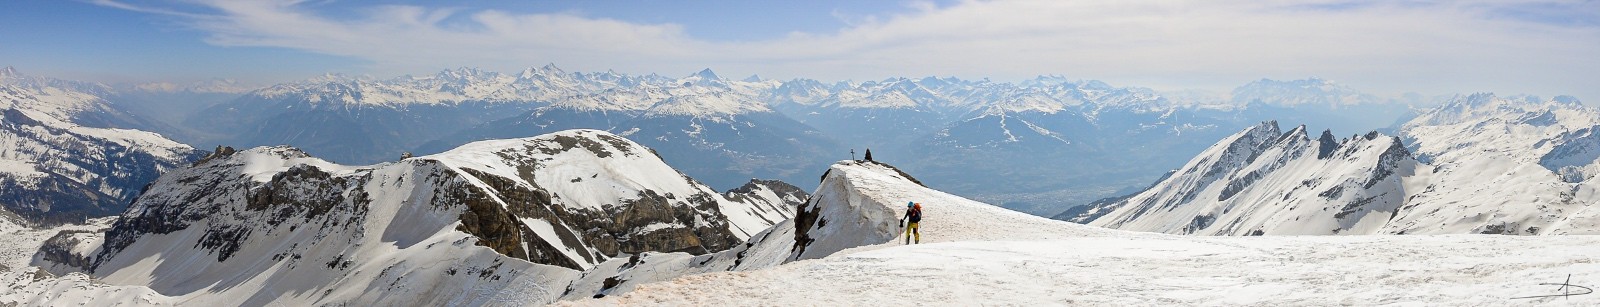  Le décor : Valais et Mont Blanc.